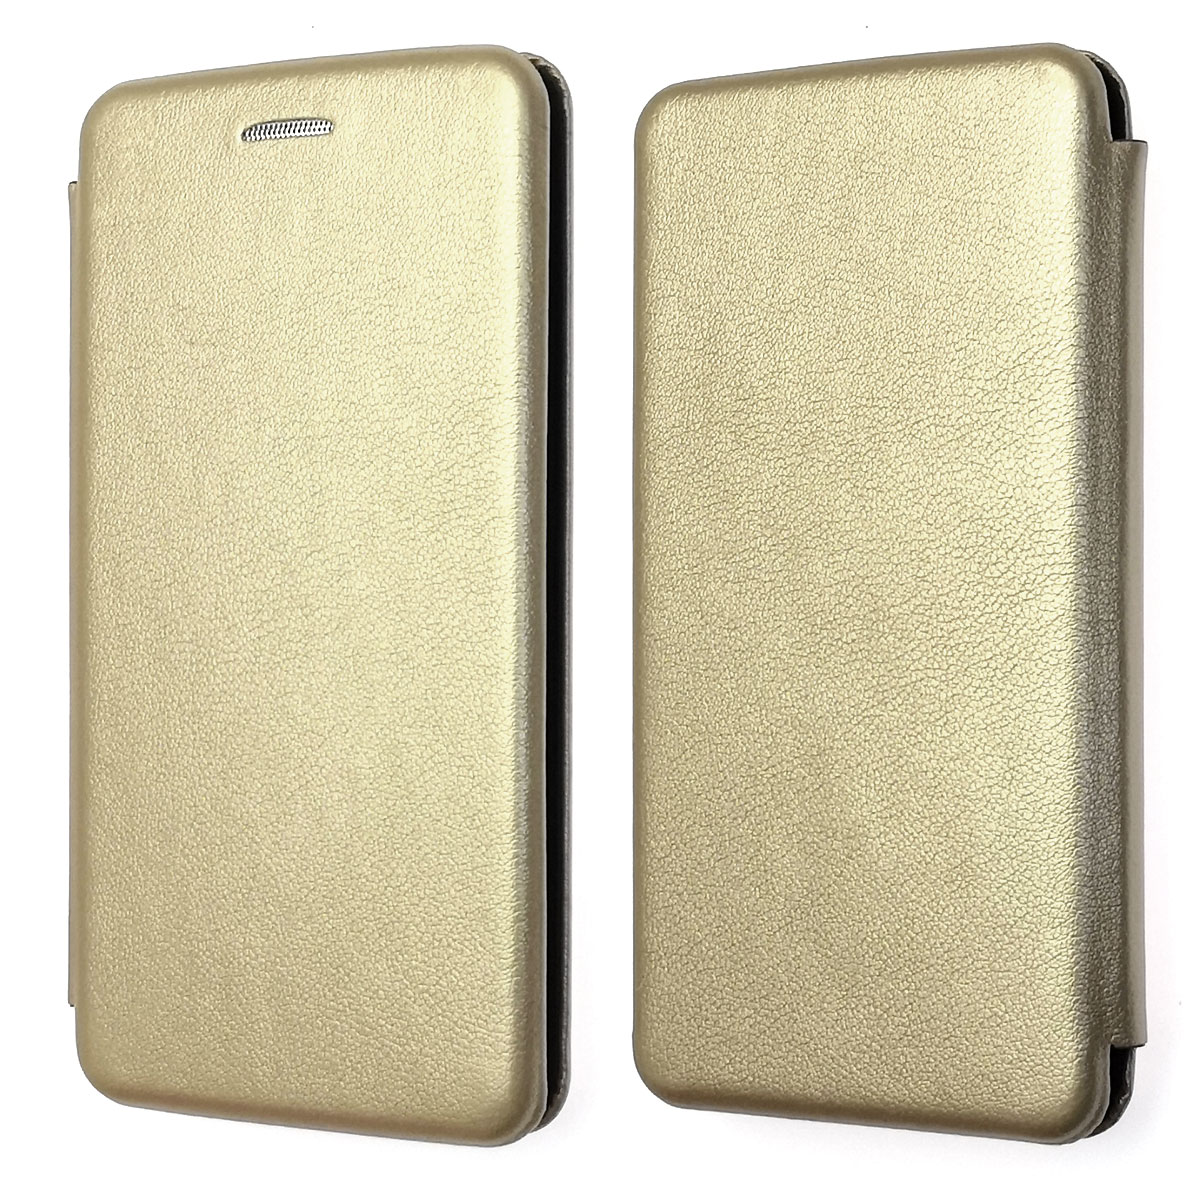 Чехол книжка универсальная для смартфонов размером 5.0 - 5.5, экокожа, цвет золотистый.